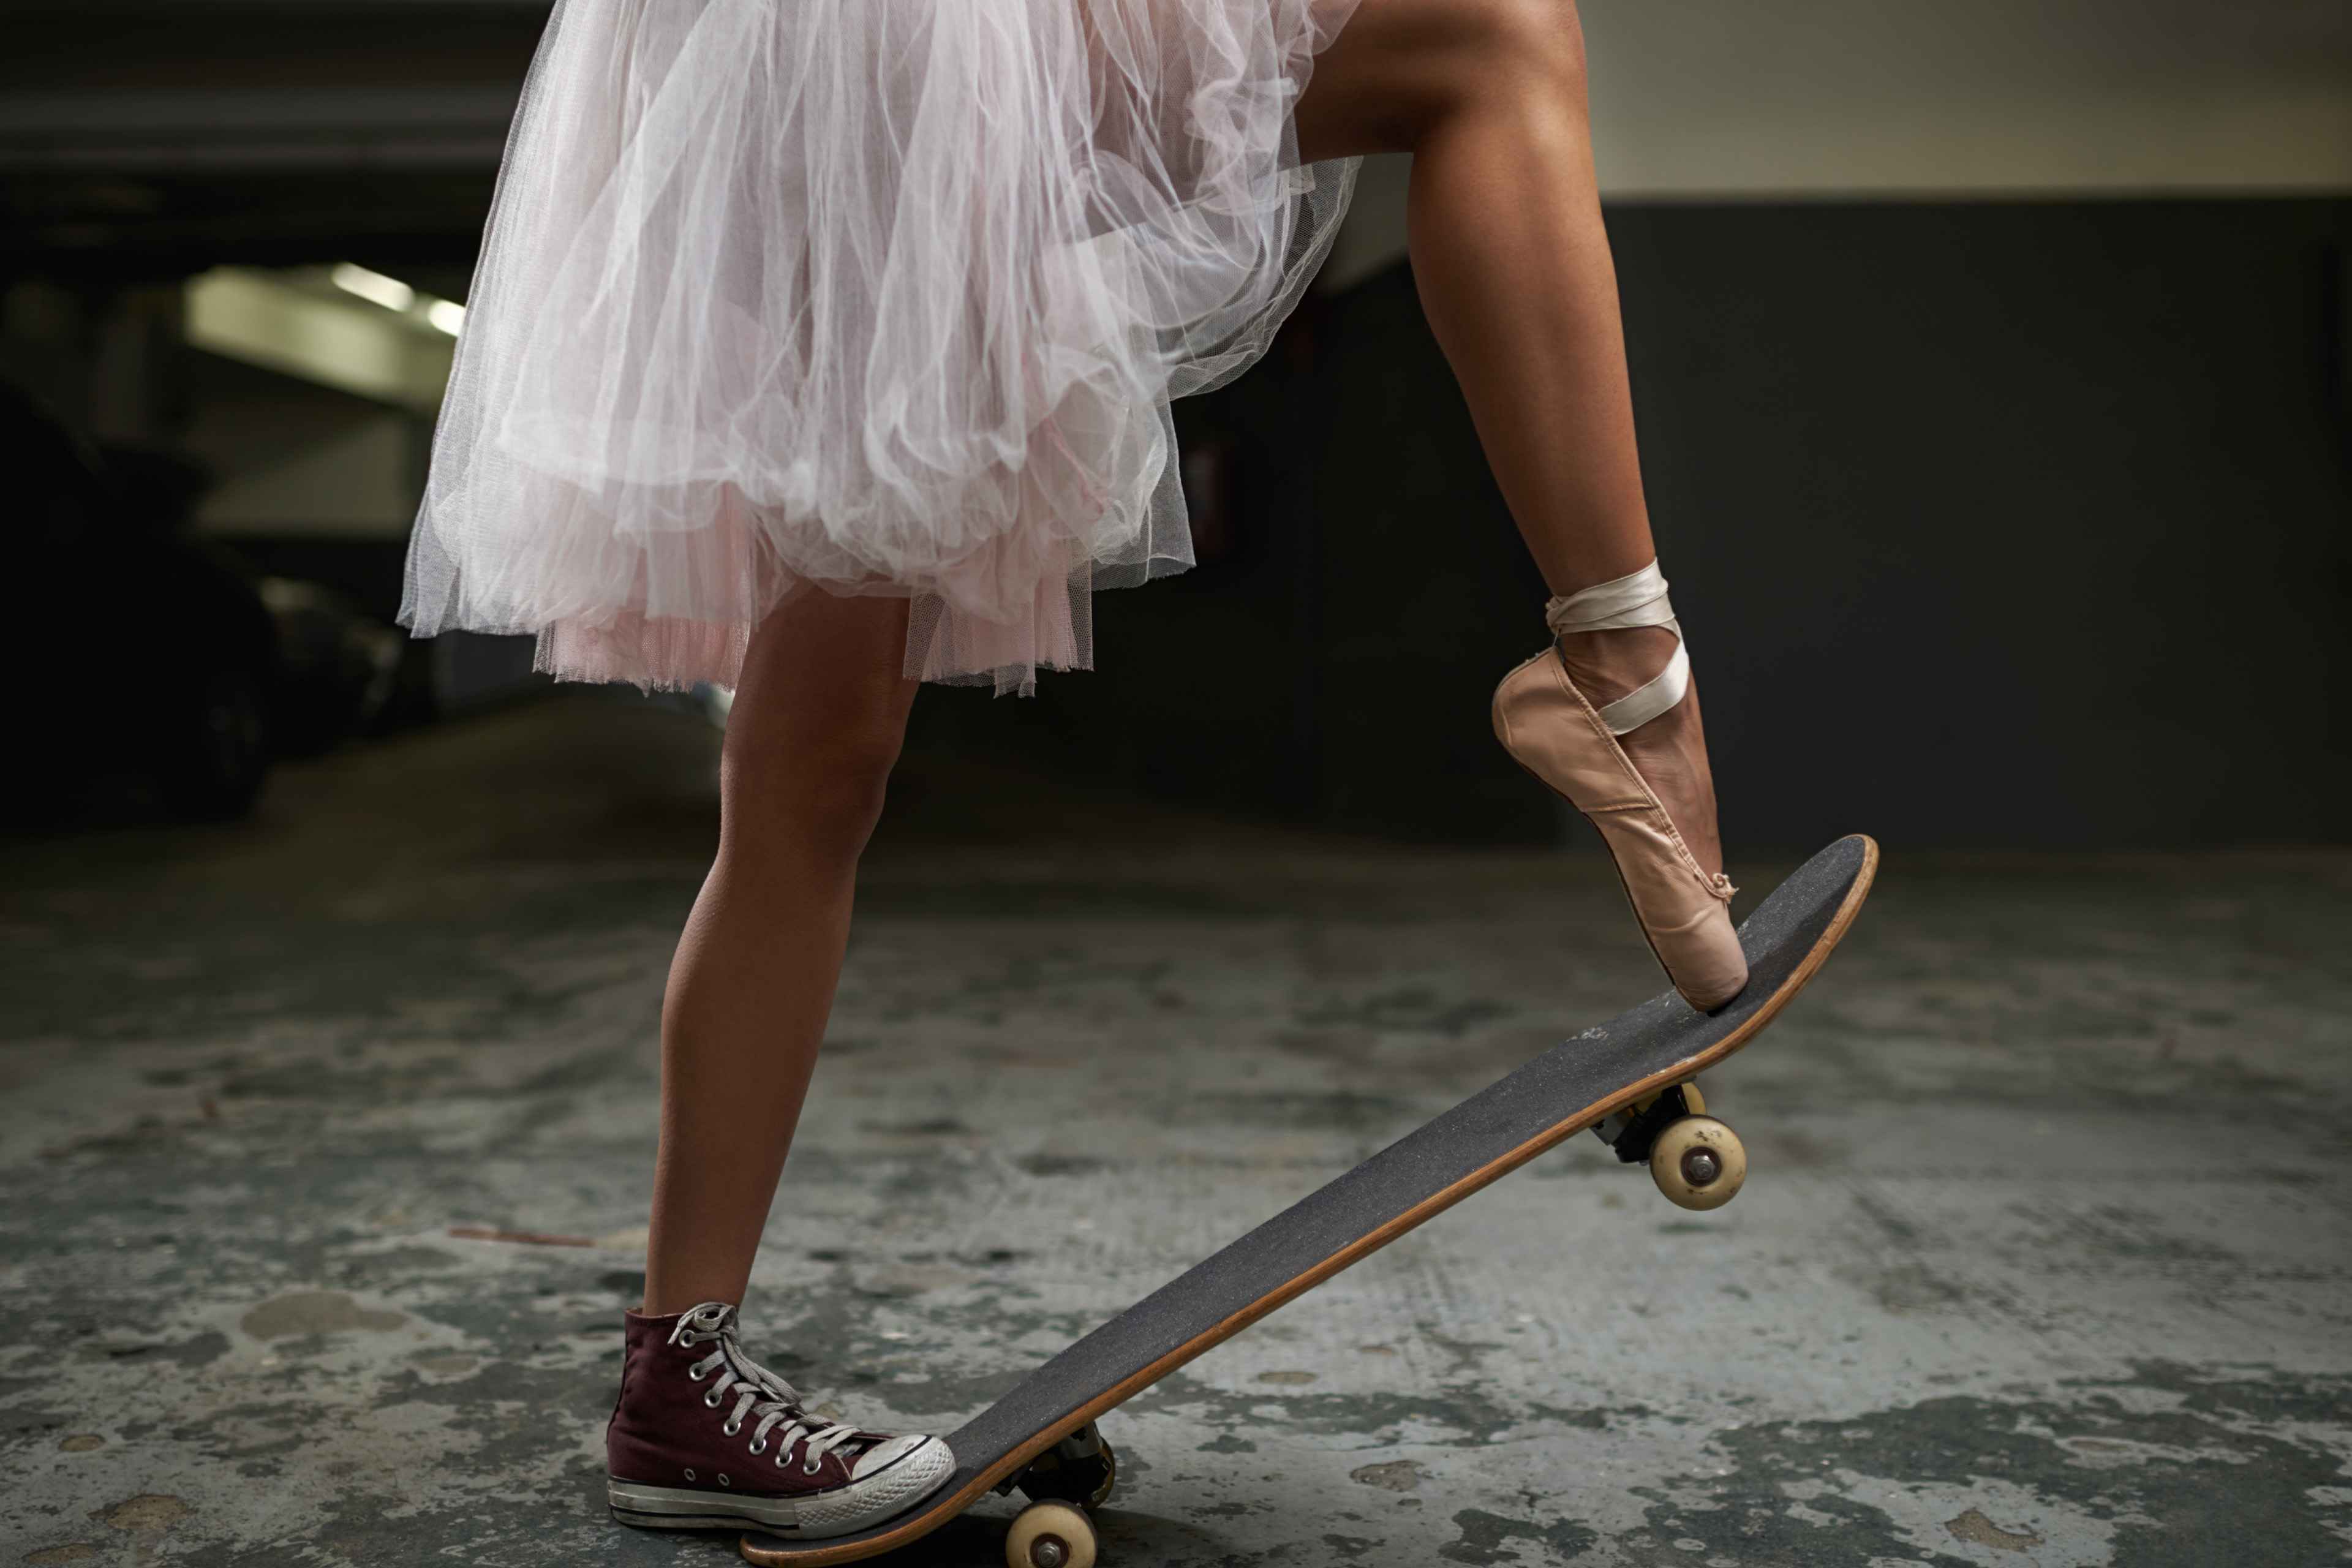 Ballet dancer on skateboard